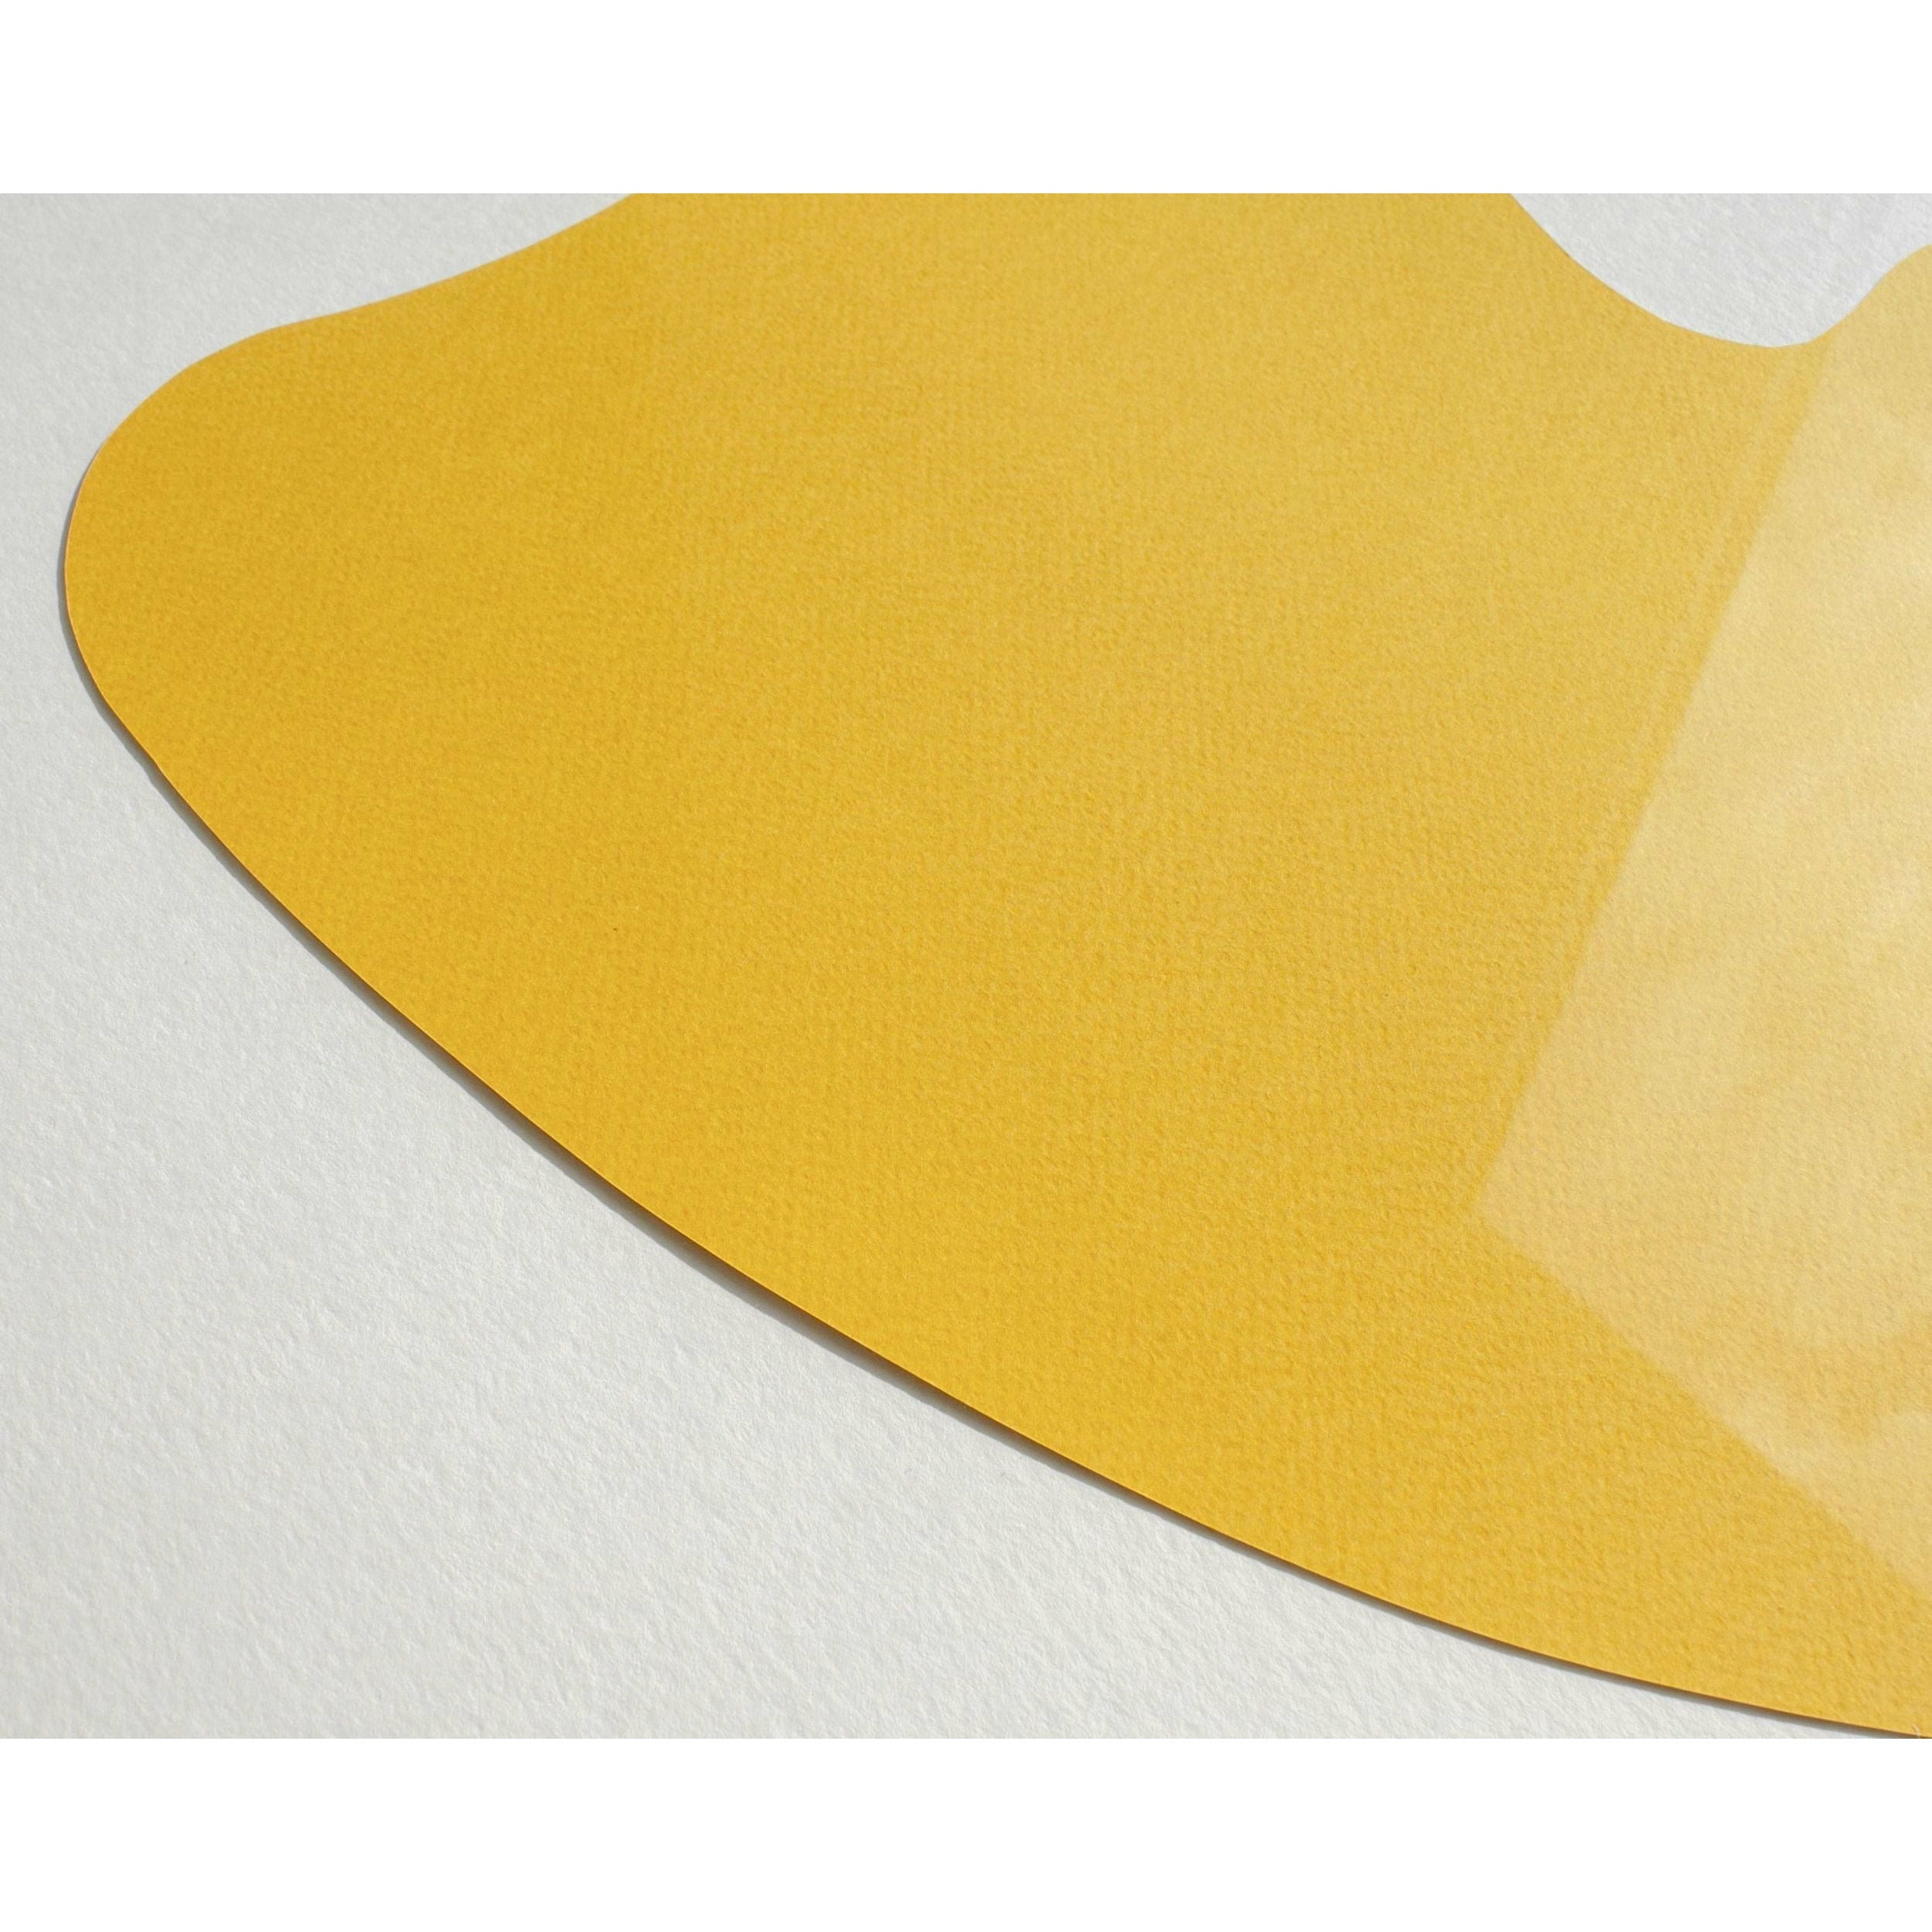 Plakat klipu z papieru do jajka, rama wykonana z jasnego drewna 50x70 cm, różowe tło